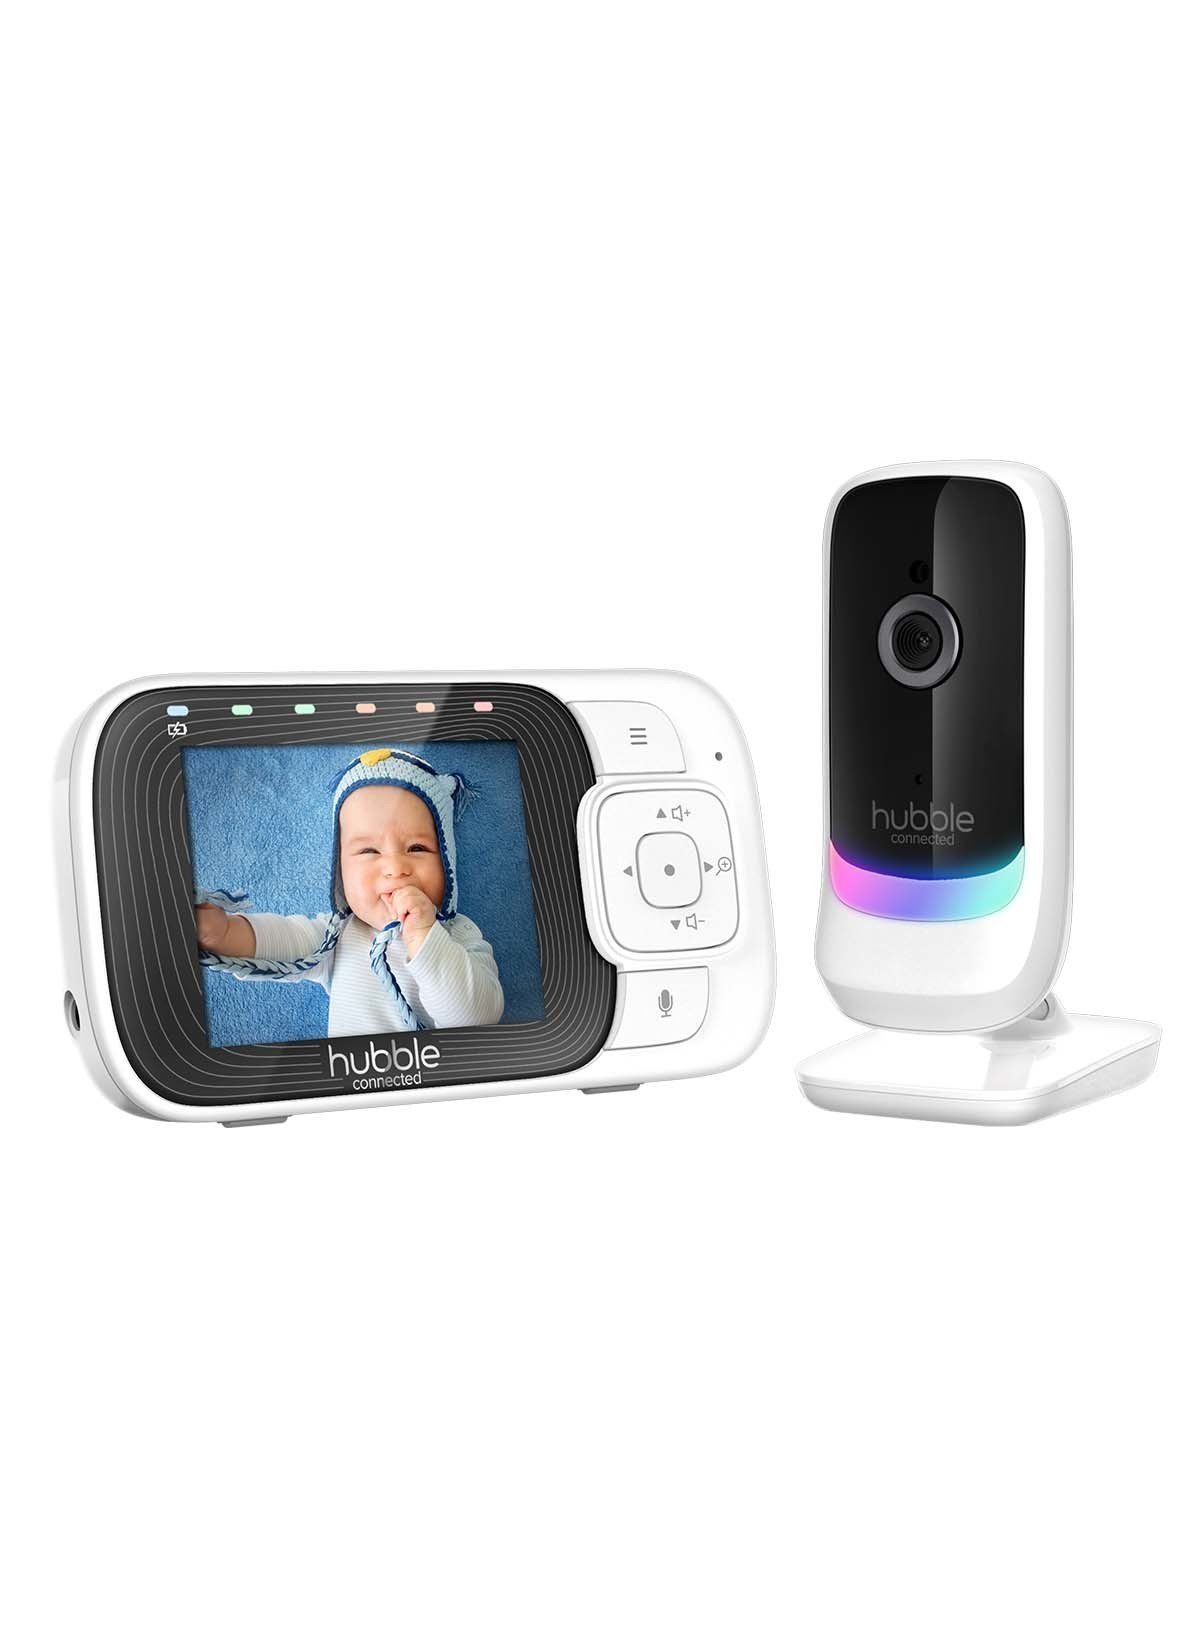 BOIFUN Babyphone mit Kamera 5 Zoll LCD Bildschirm Baby Monitor Kamera  3×Zoom VOX